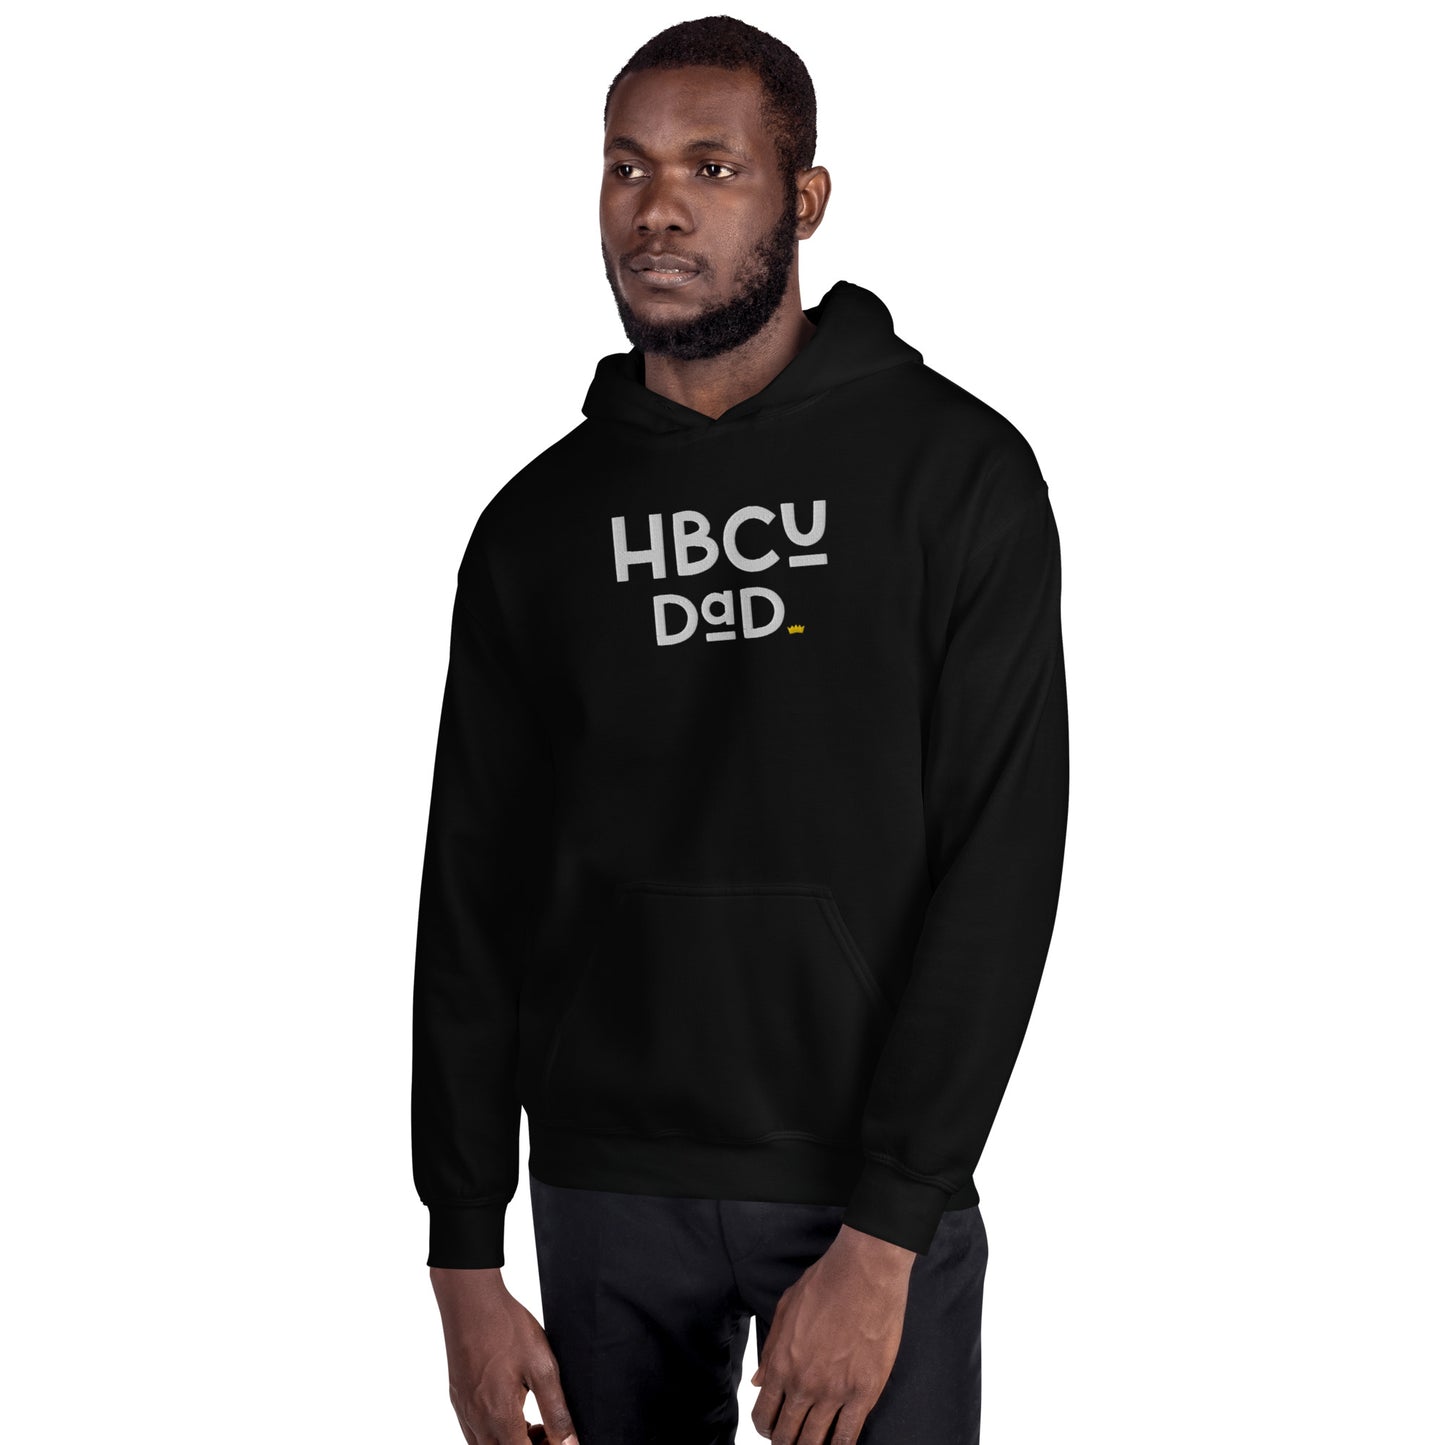 Dad - HBCU Embroidered Unisex Hoodie